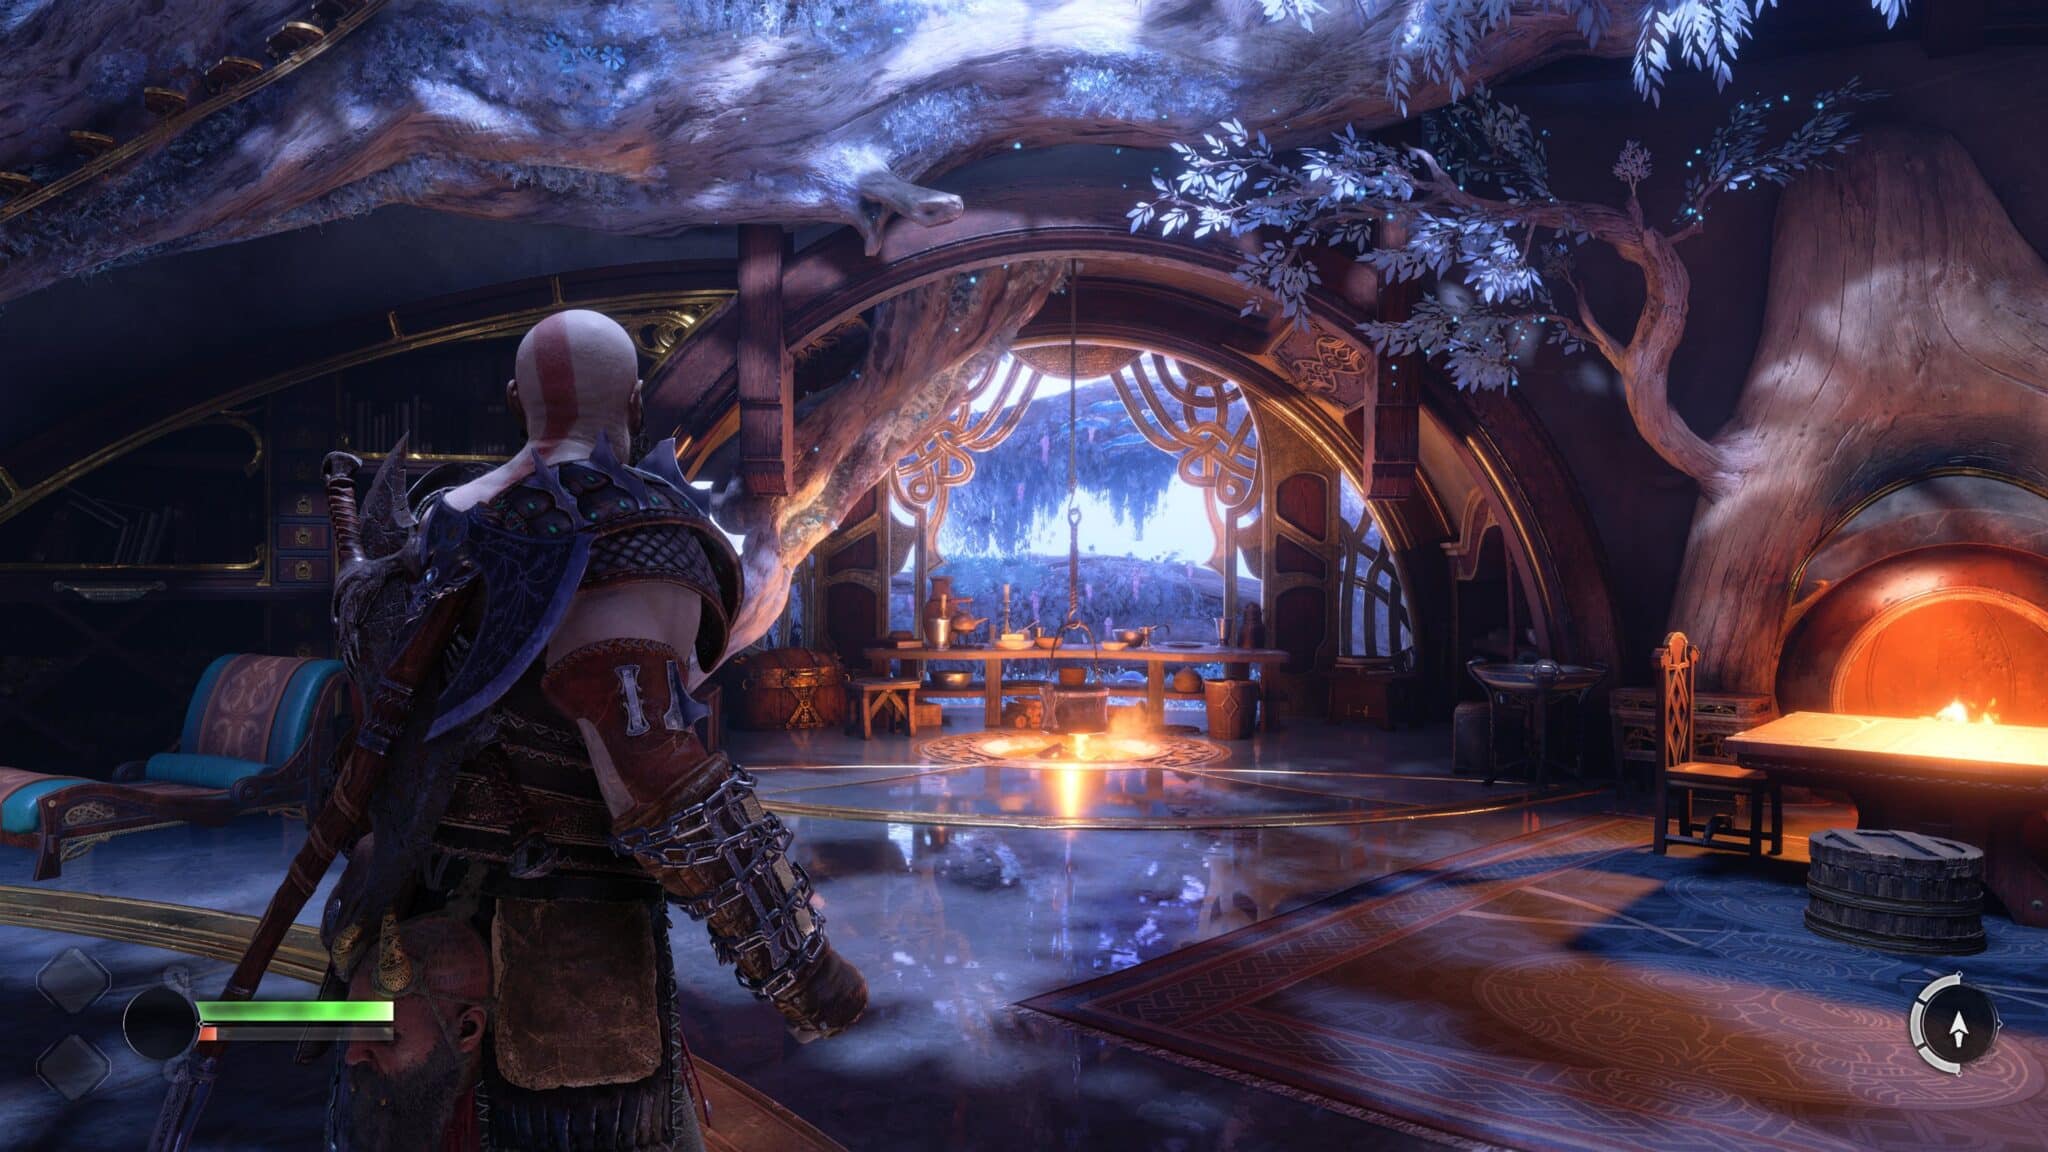 (Entre sus aventuras, Kratos y Atreus se refugian regularmente en la casa de sus amigos enanos)